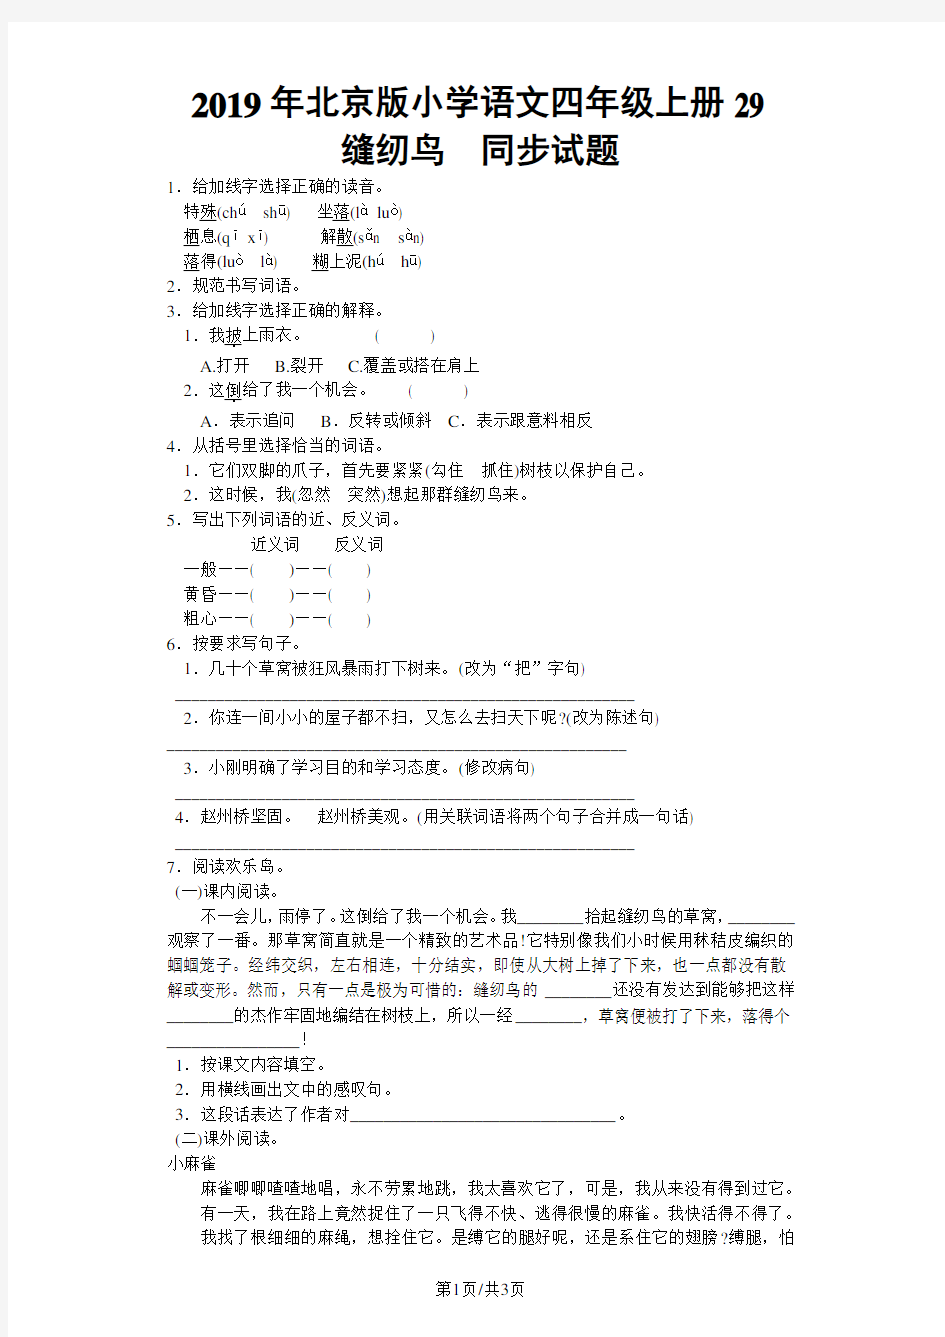 四年级上语文同步试题缝纫鸟 _北京课改版